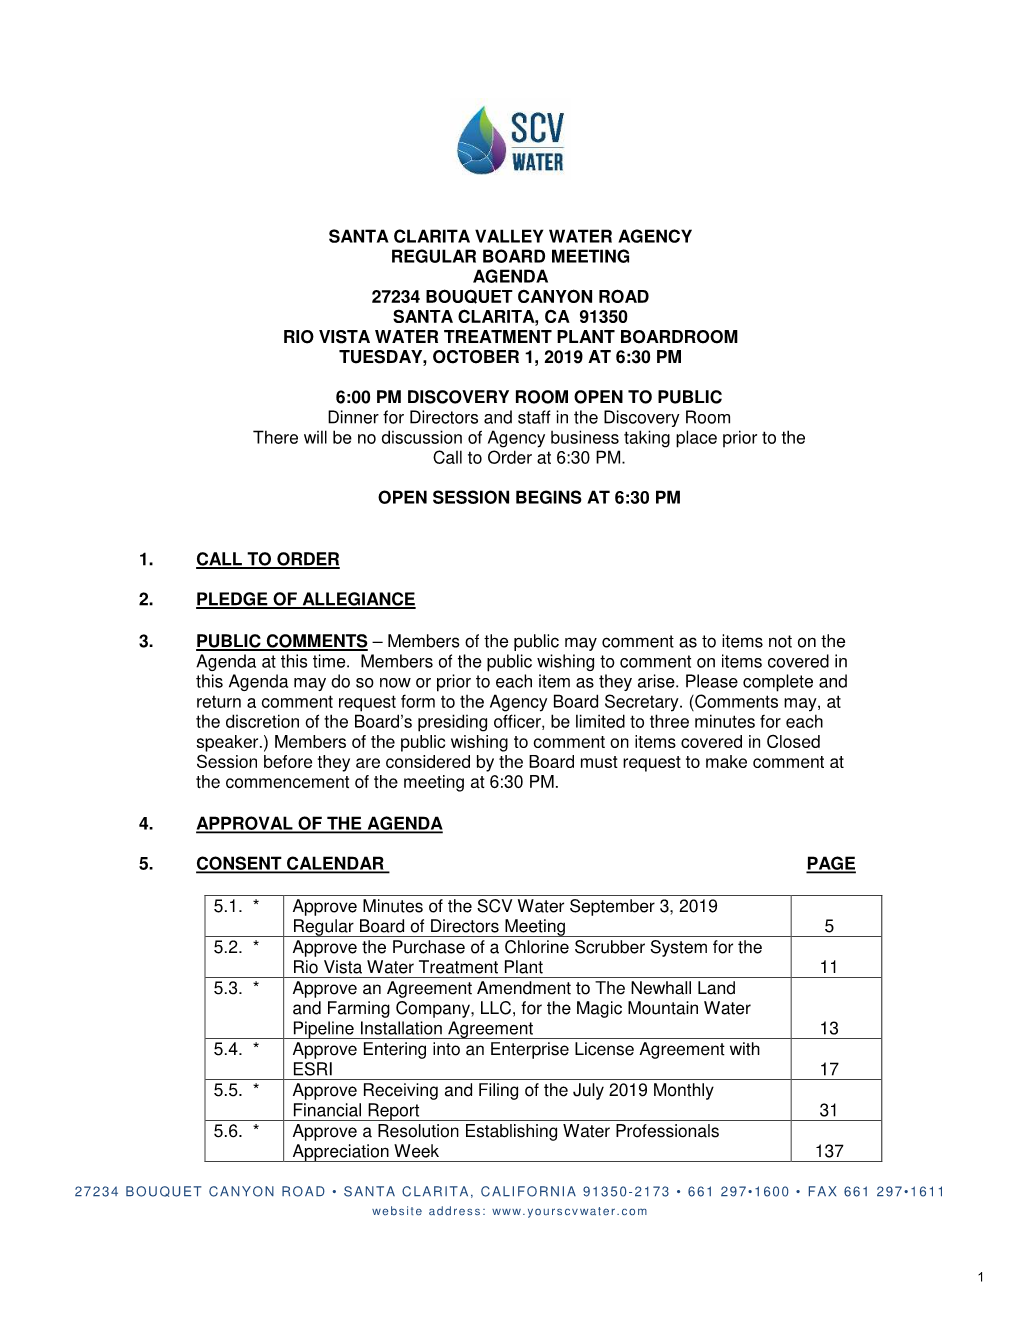 Santa Clarita Valley Water Agency Regular Board Meeting Agenda 27234 Bouquet Canyon Road Santa Clarita, Ca 91350 Rio Vista Wa